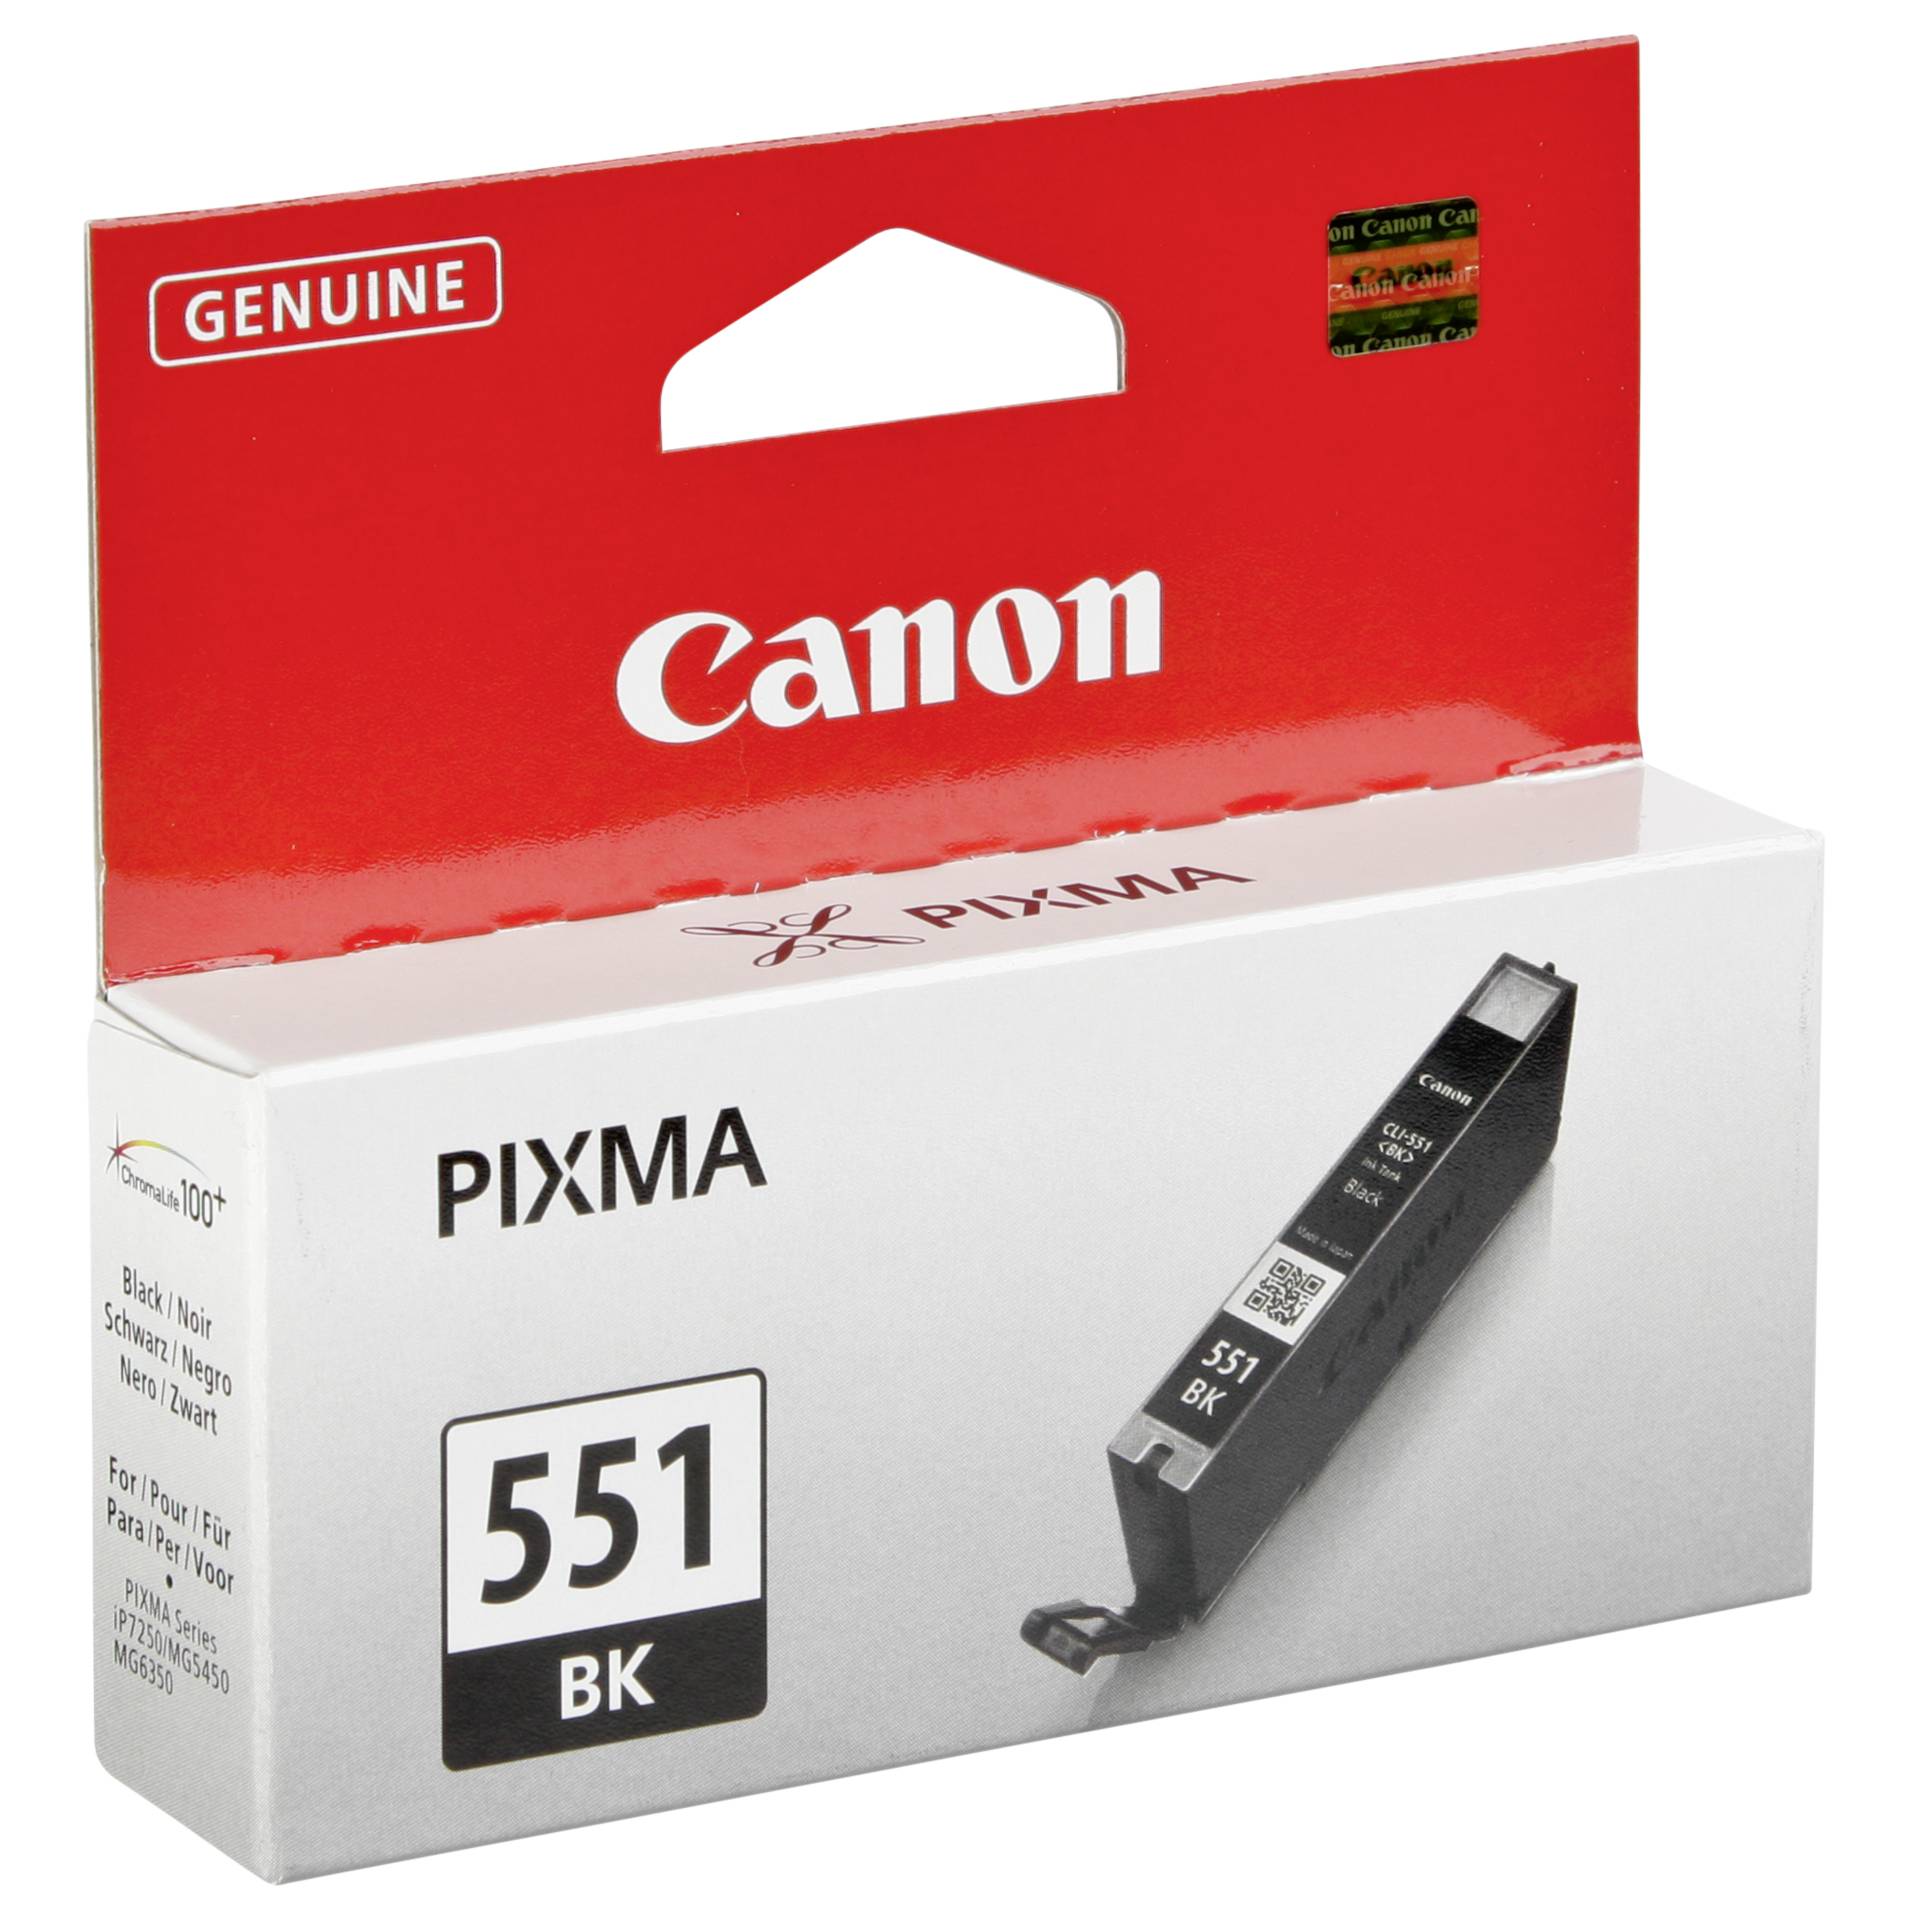 Canon CLI-551BK Tinte schwarz 